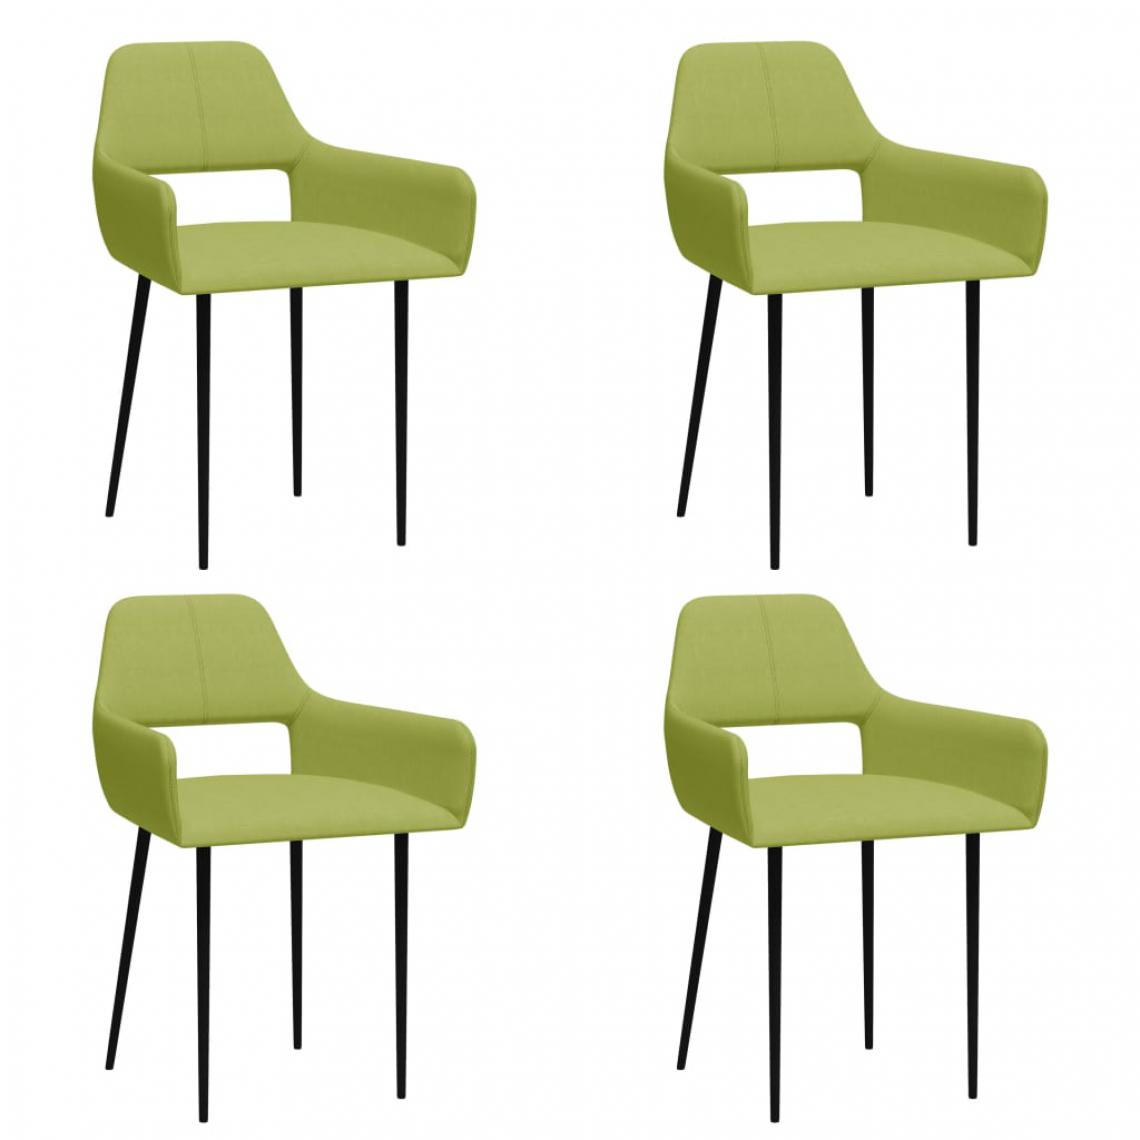 Icaverne - Moderne Fauteuils et chaises gamme Maseru Chaises de salle à manger 4 pcs Vert Tissu - Chaises